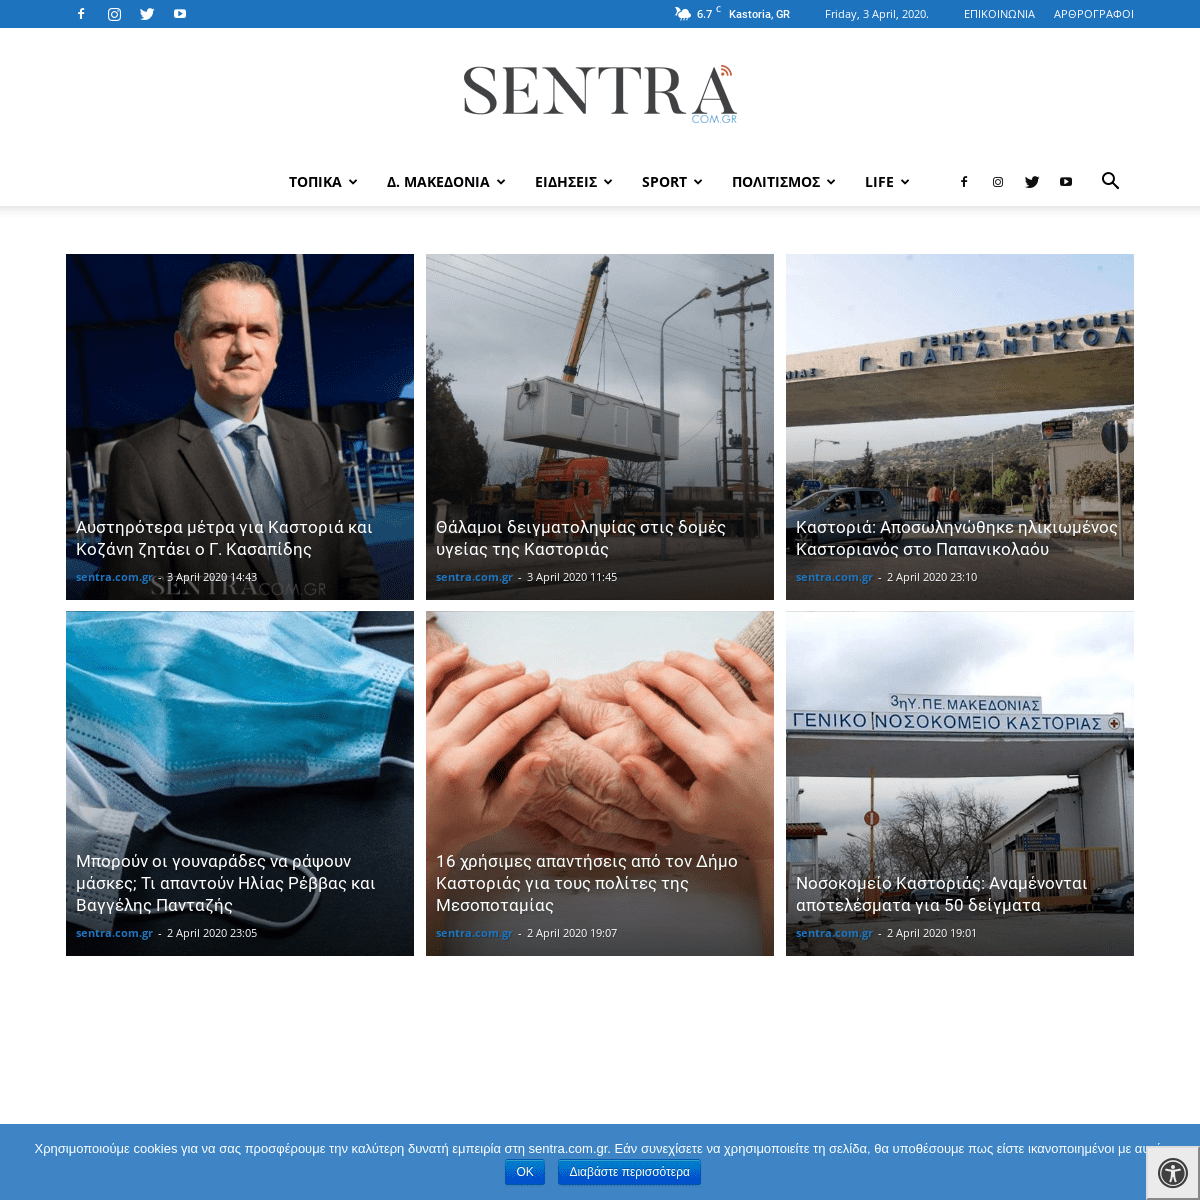 A complete backup of sentra.com.gr